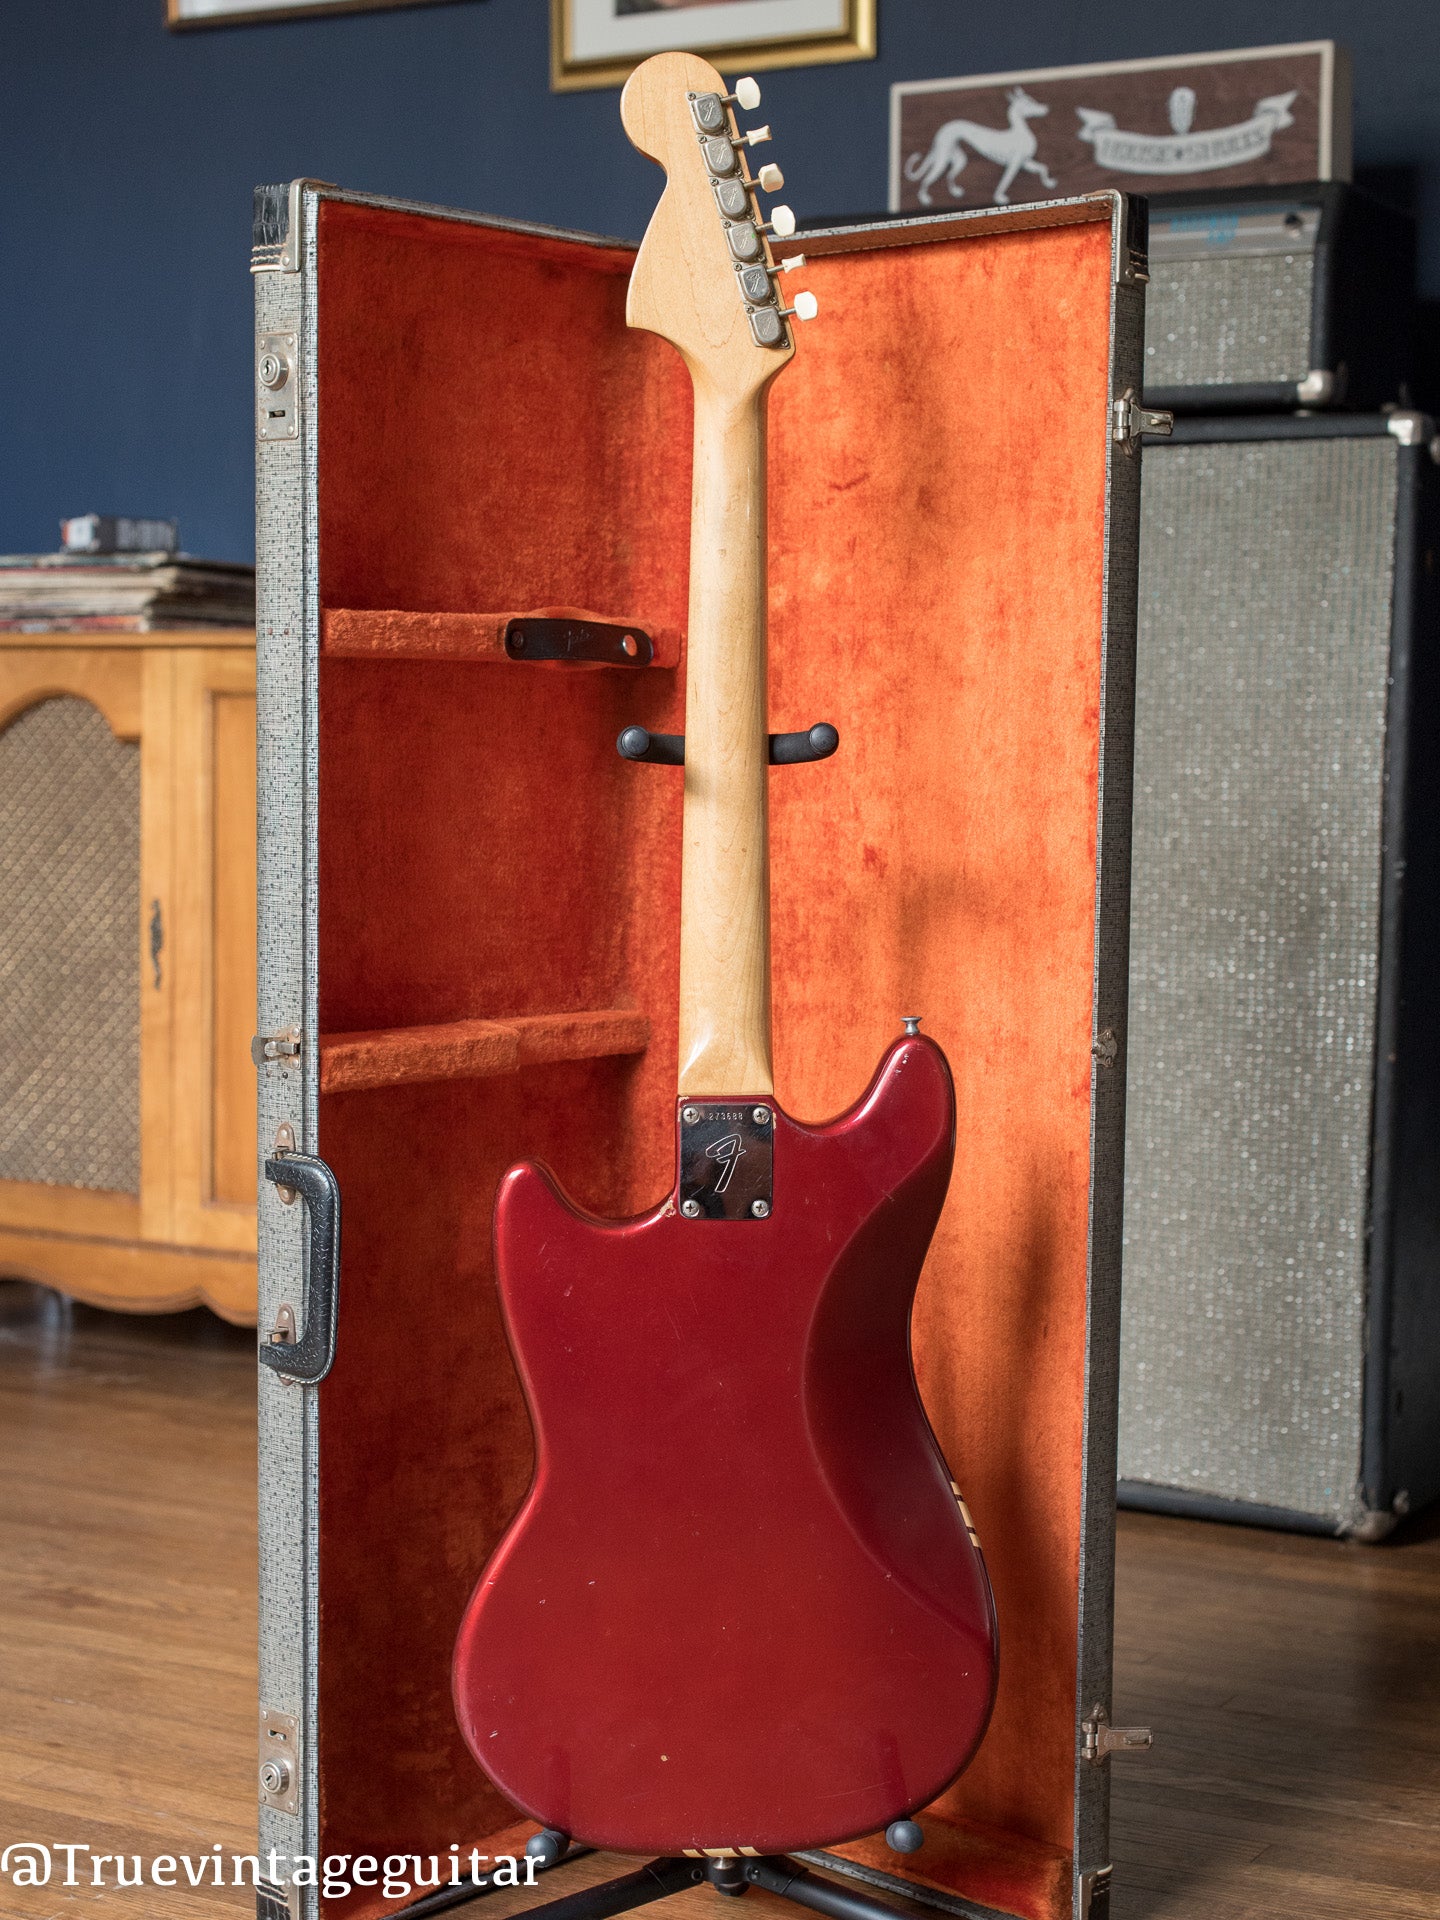 Vintage Fender electric guitar red 1969